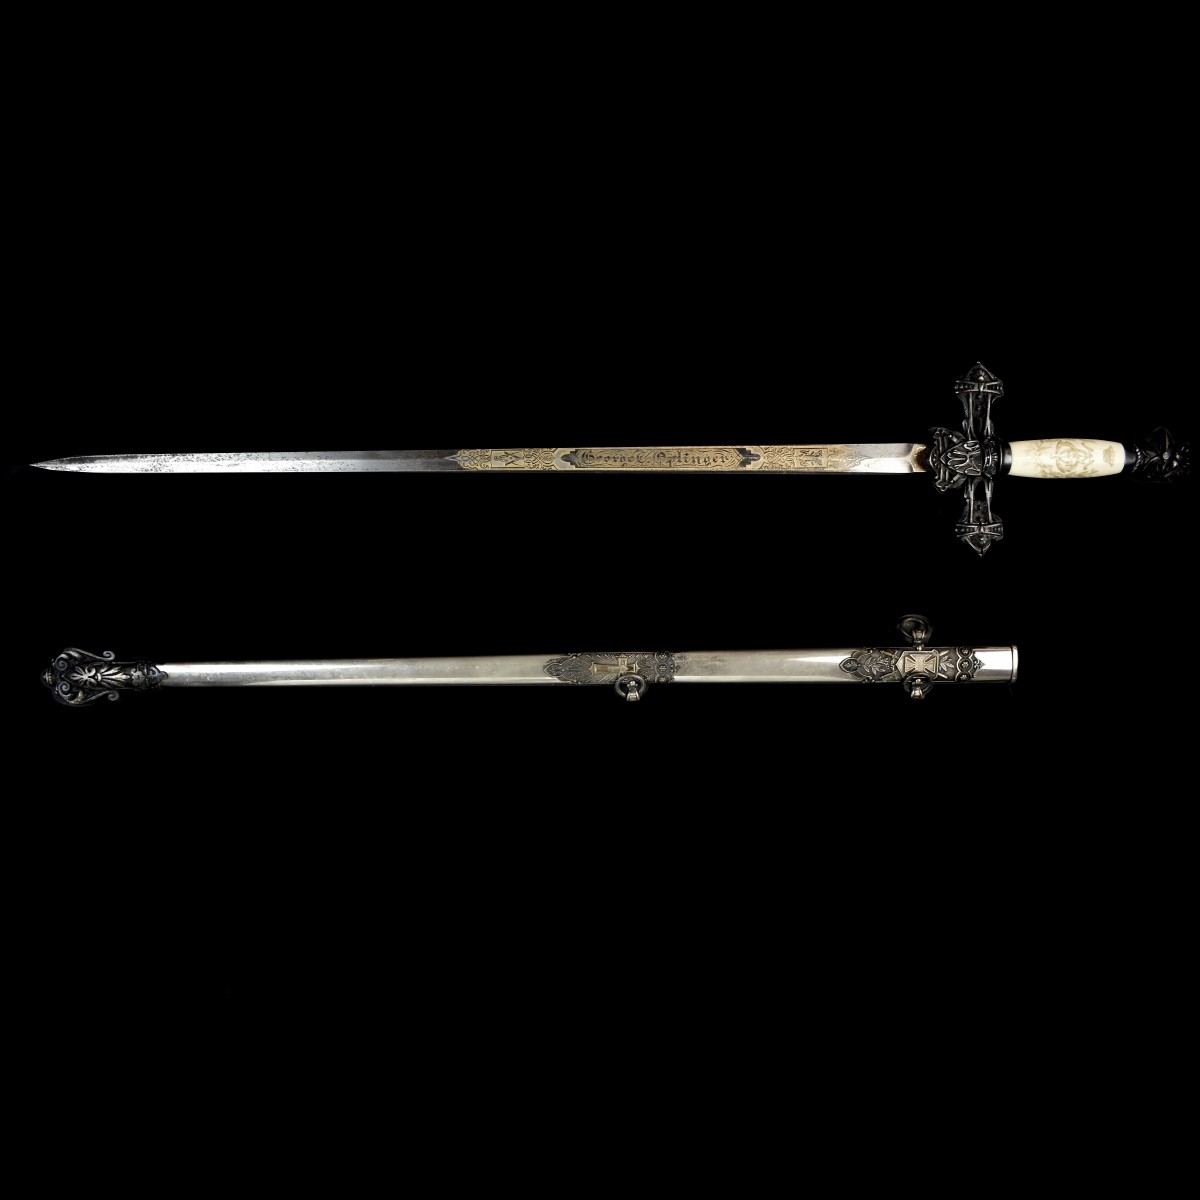 Vintage Masonic Knights Templar Sword